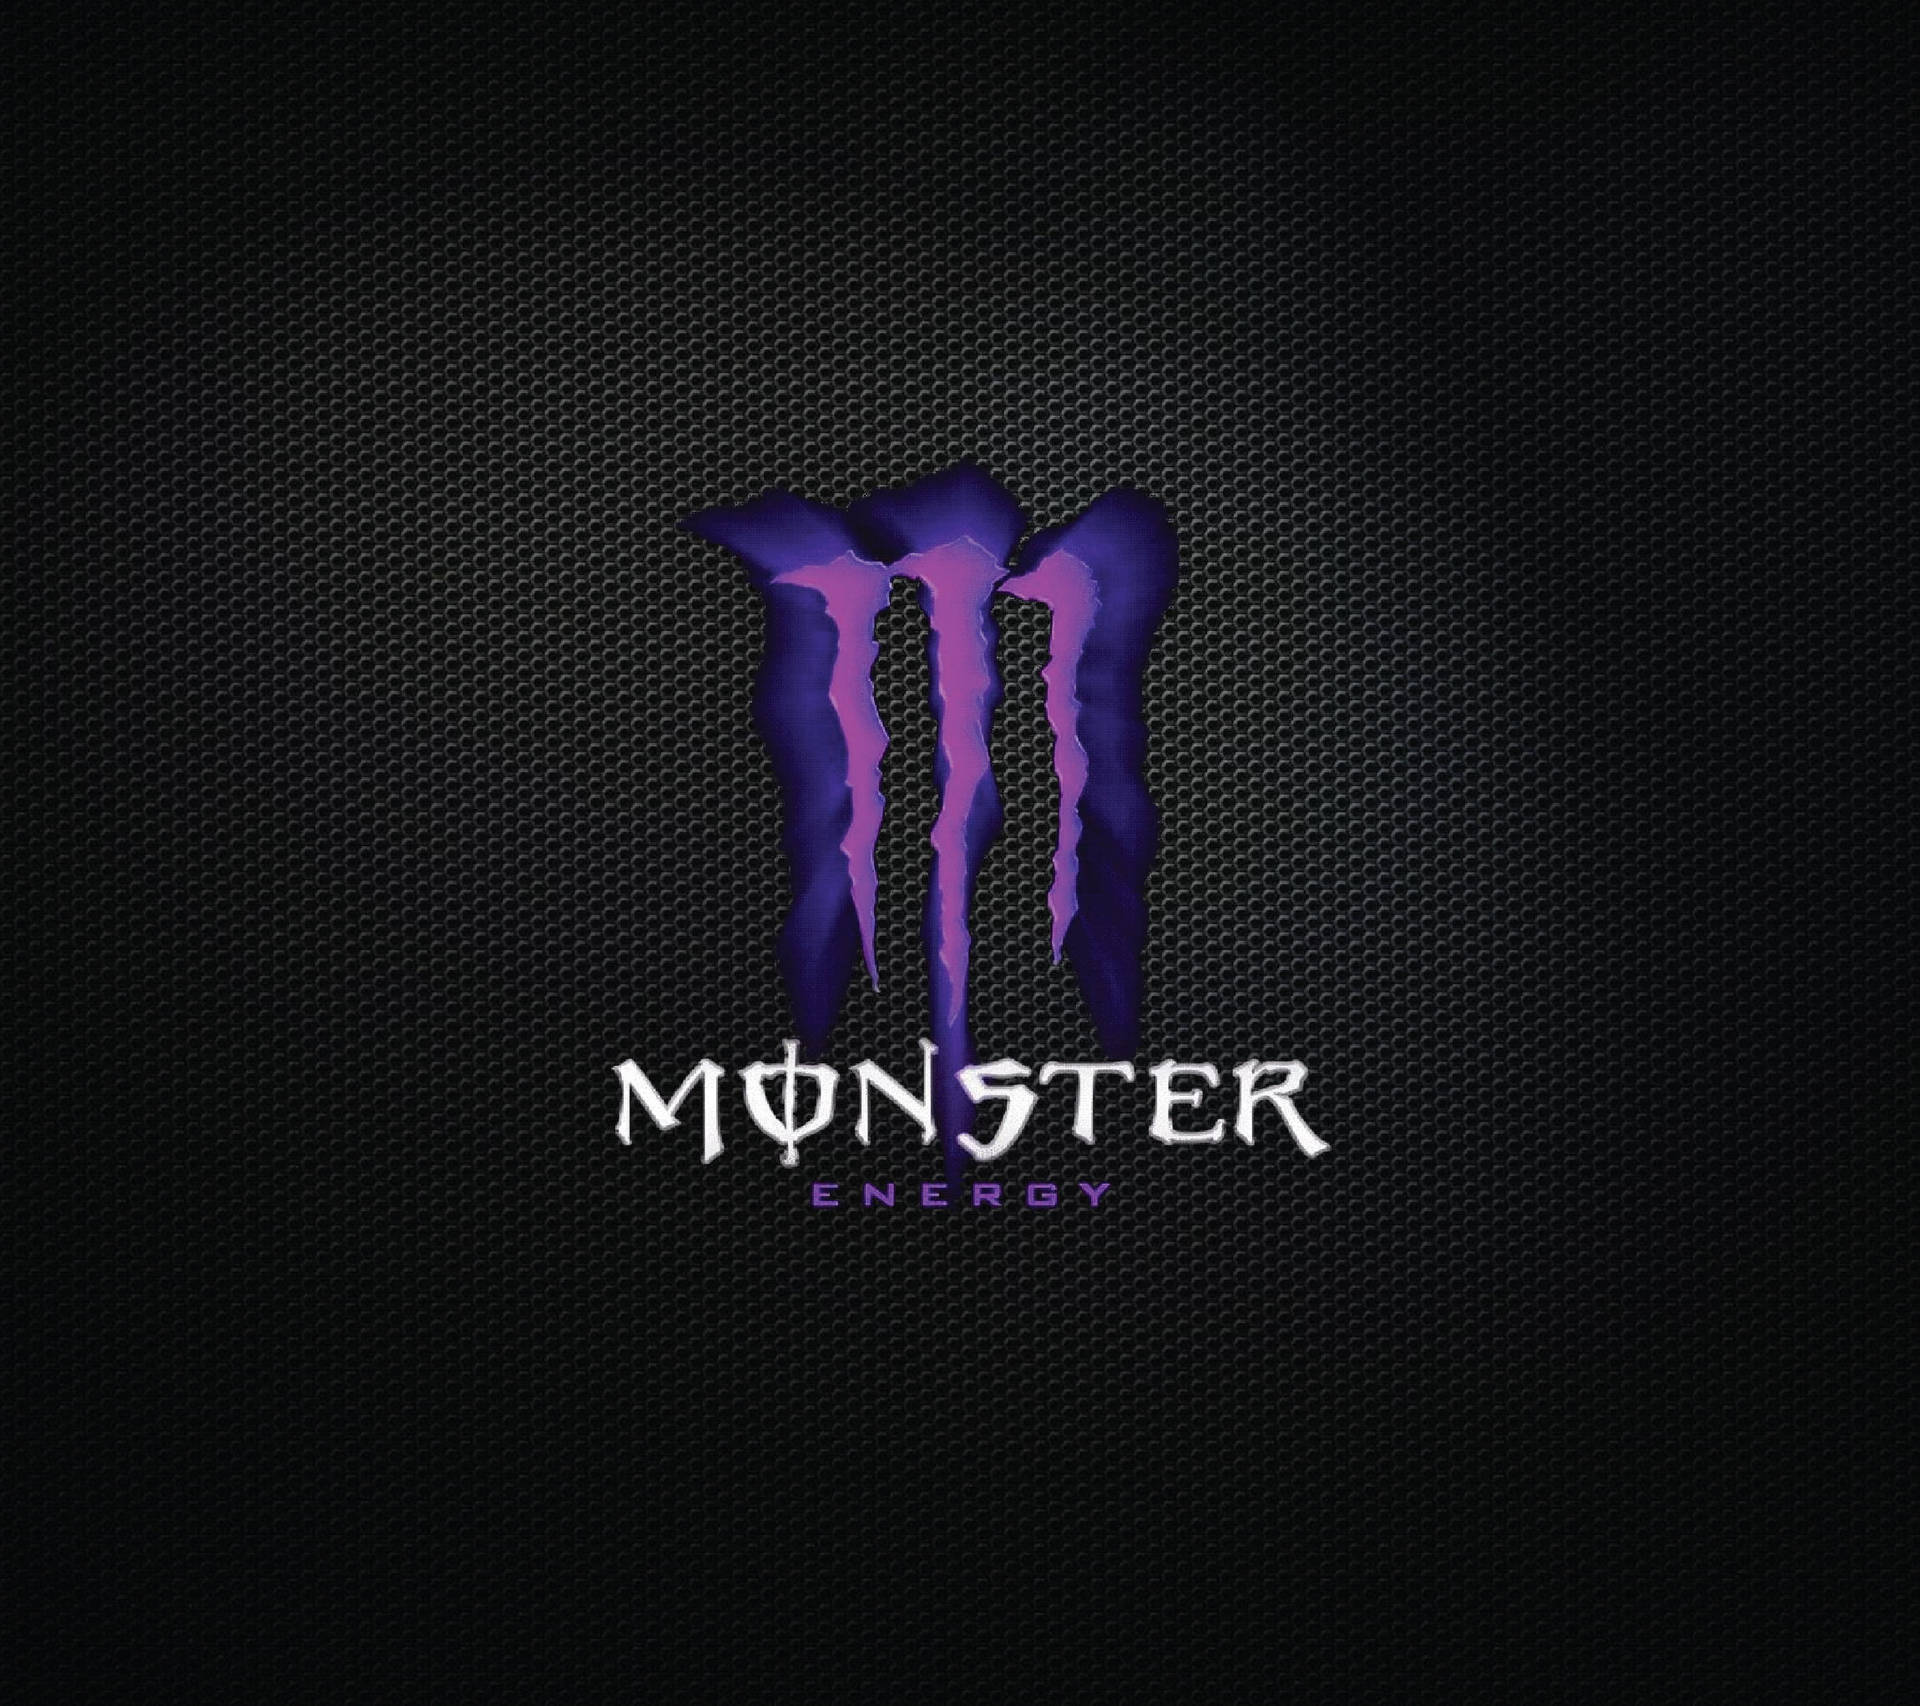 Schwarzesund Lila Ästhetisches Monster-logo Wallpaper